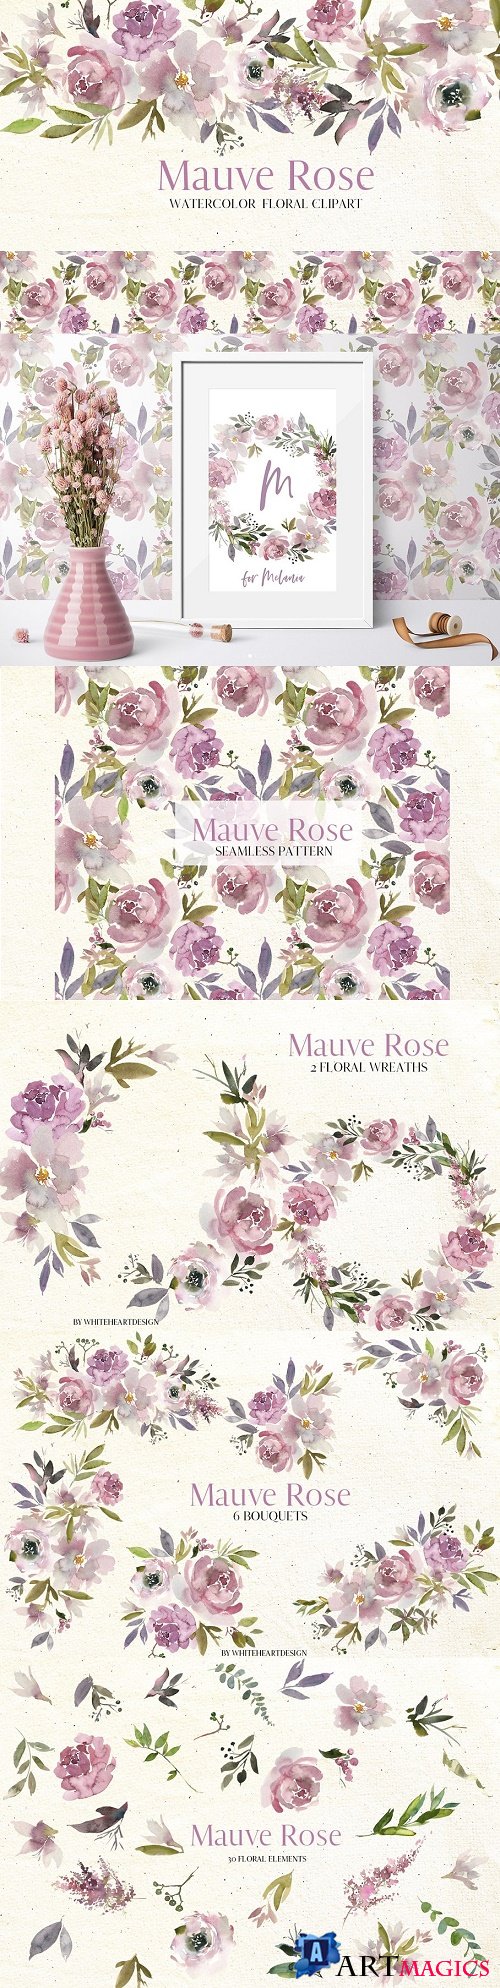 Mauve Rose Watercolor Floral Clipart - 2997079